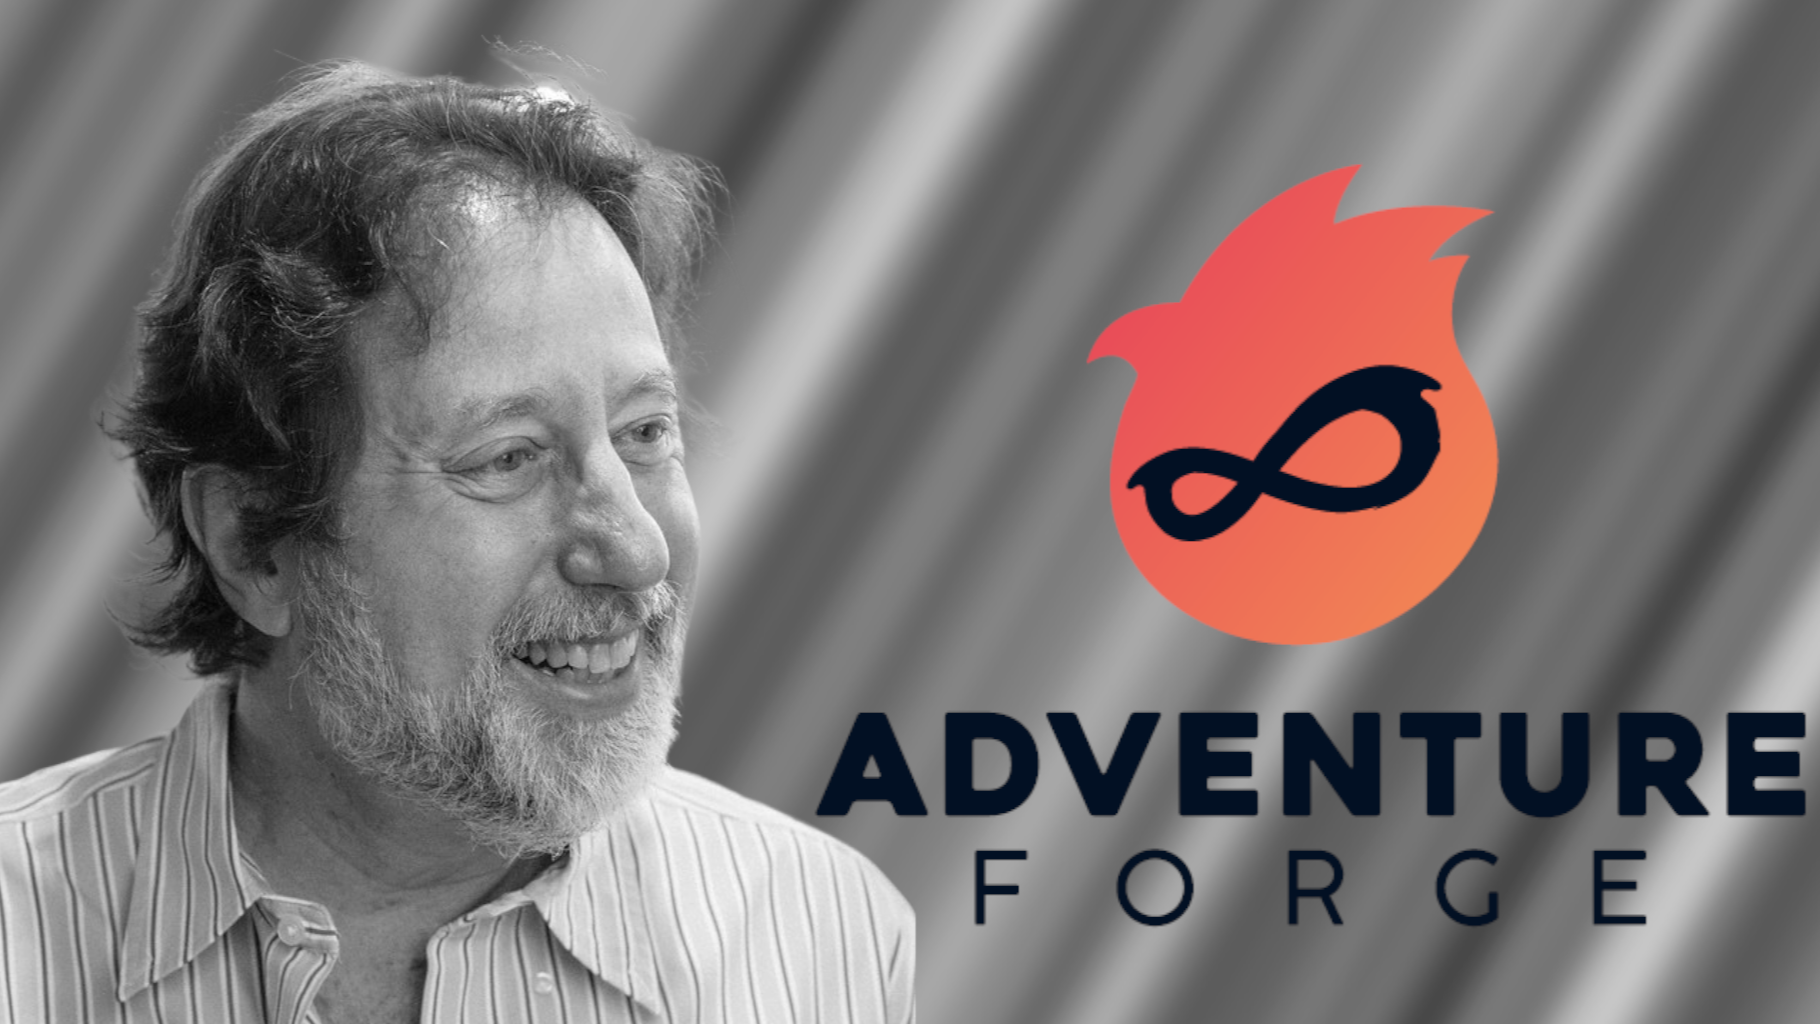 يتحدث جوردان وايزمان عن Adventure Forge واستخدامه للذكاء الاصطناعي التوليدي